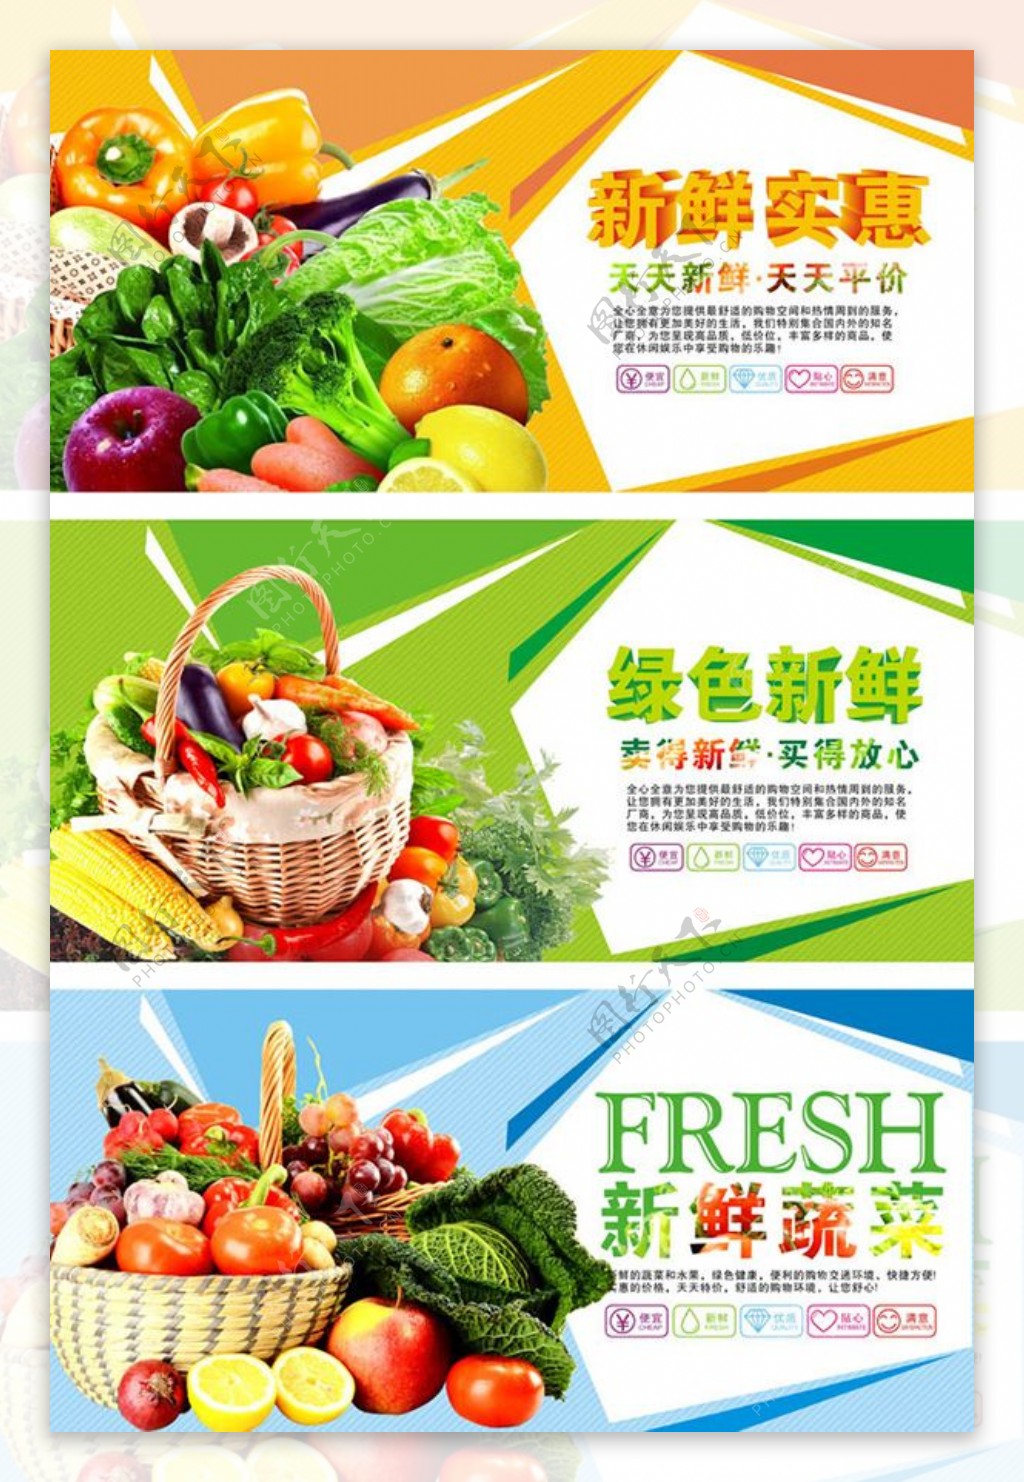 超市生鲜蔬菜展板cdr素材下载